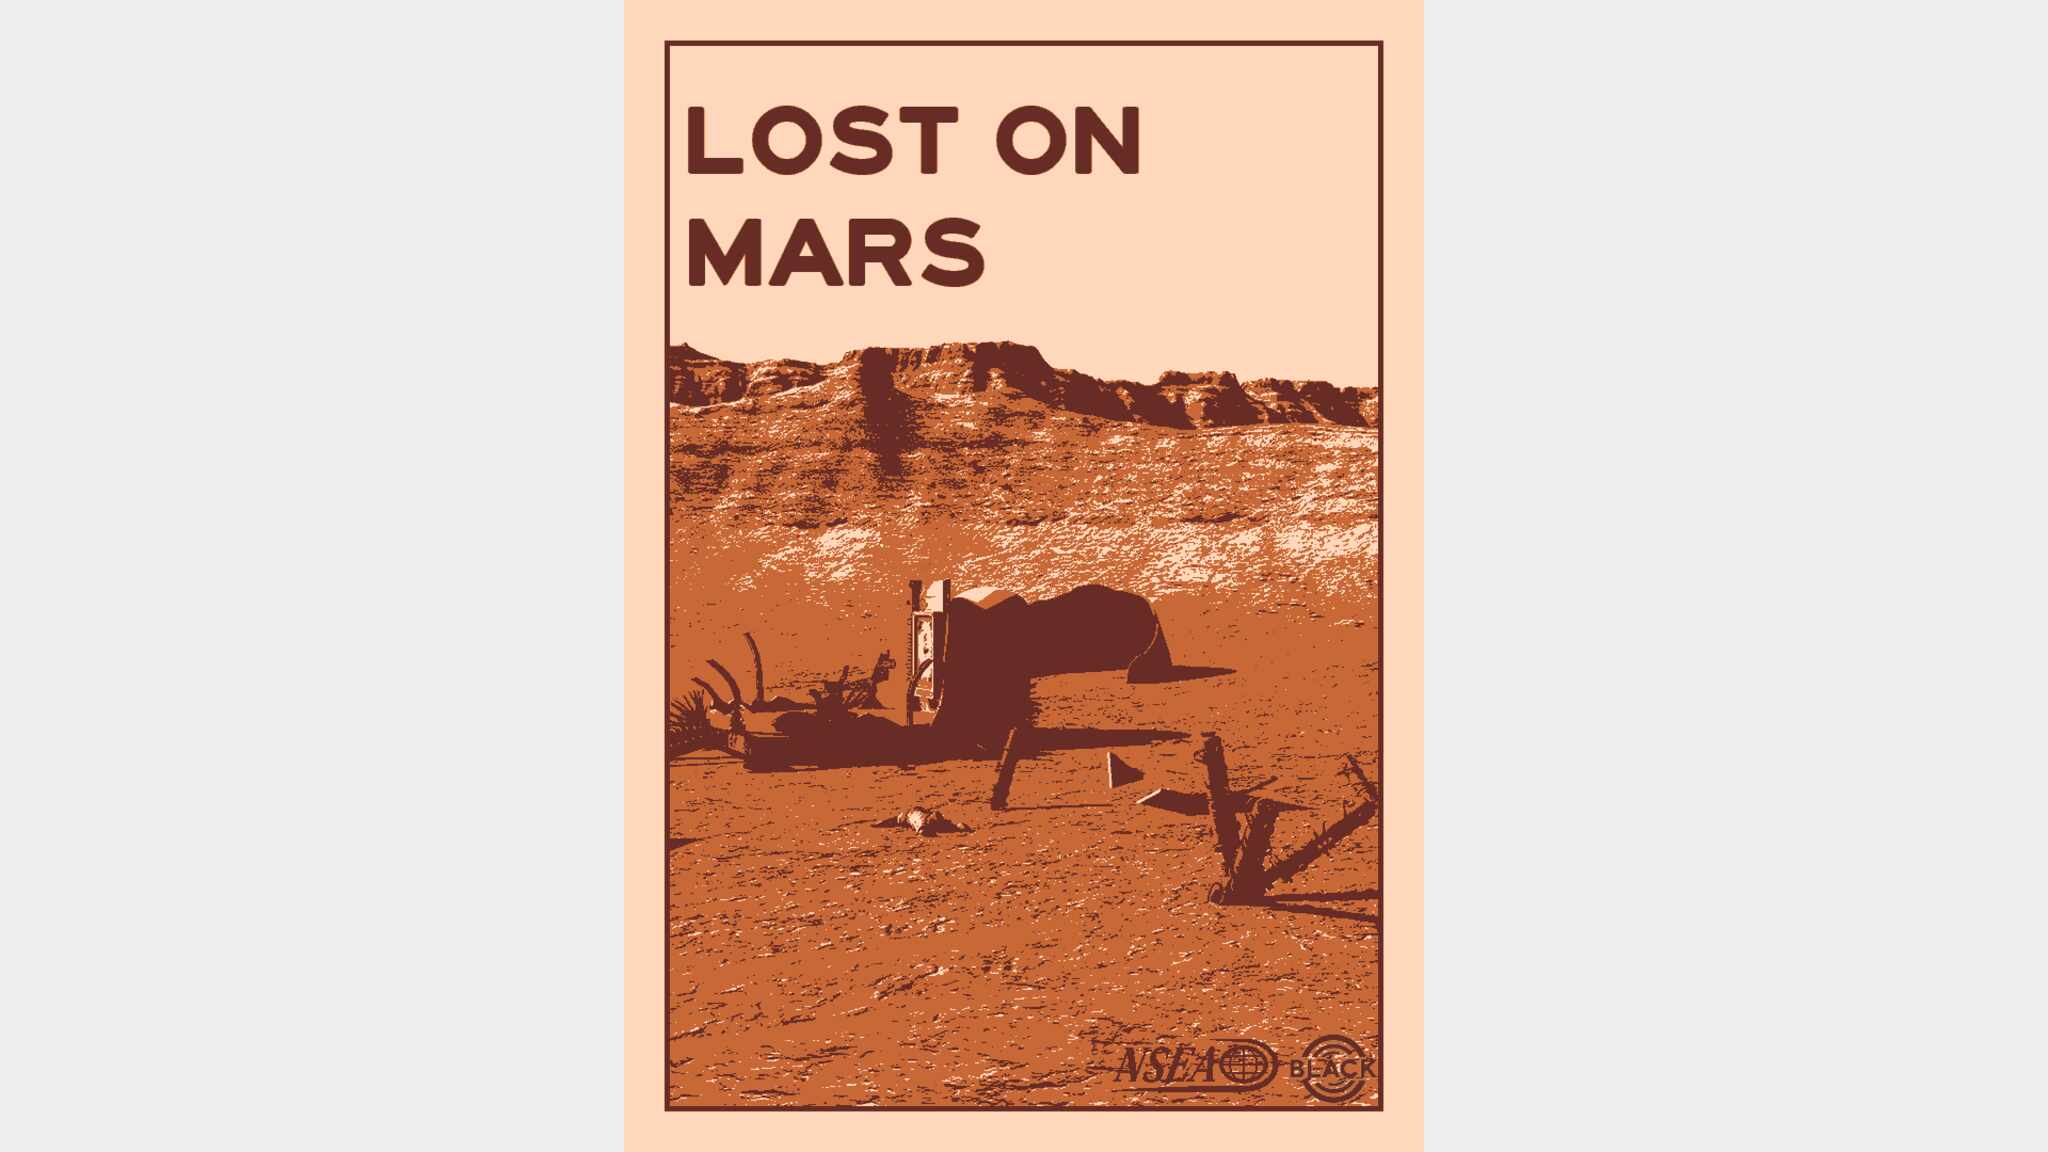 Lost on Mars